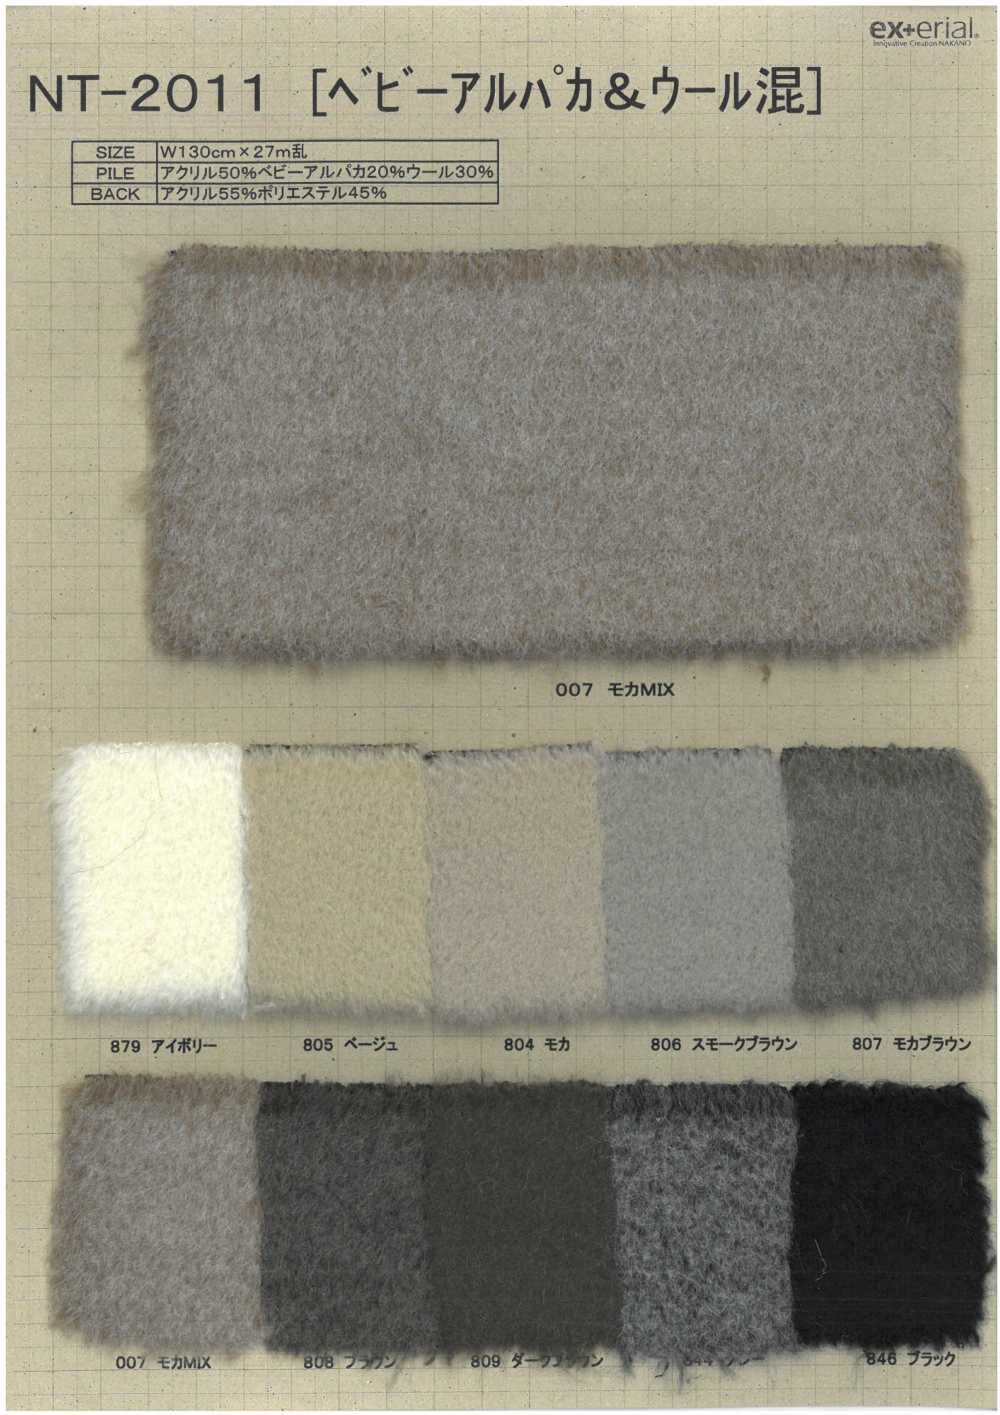 NT-2011 Piel Artesanal [mezcla De Alpaca Baby][Fabrica Textil] Industria De La Media Nakano